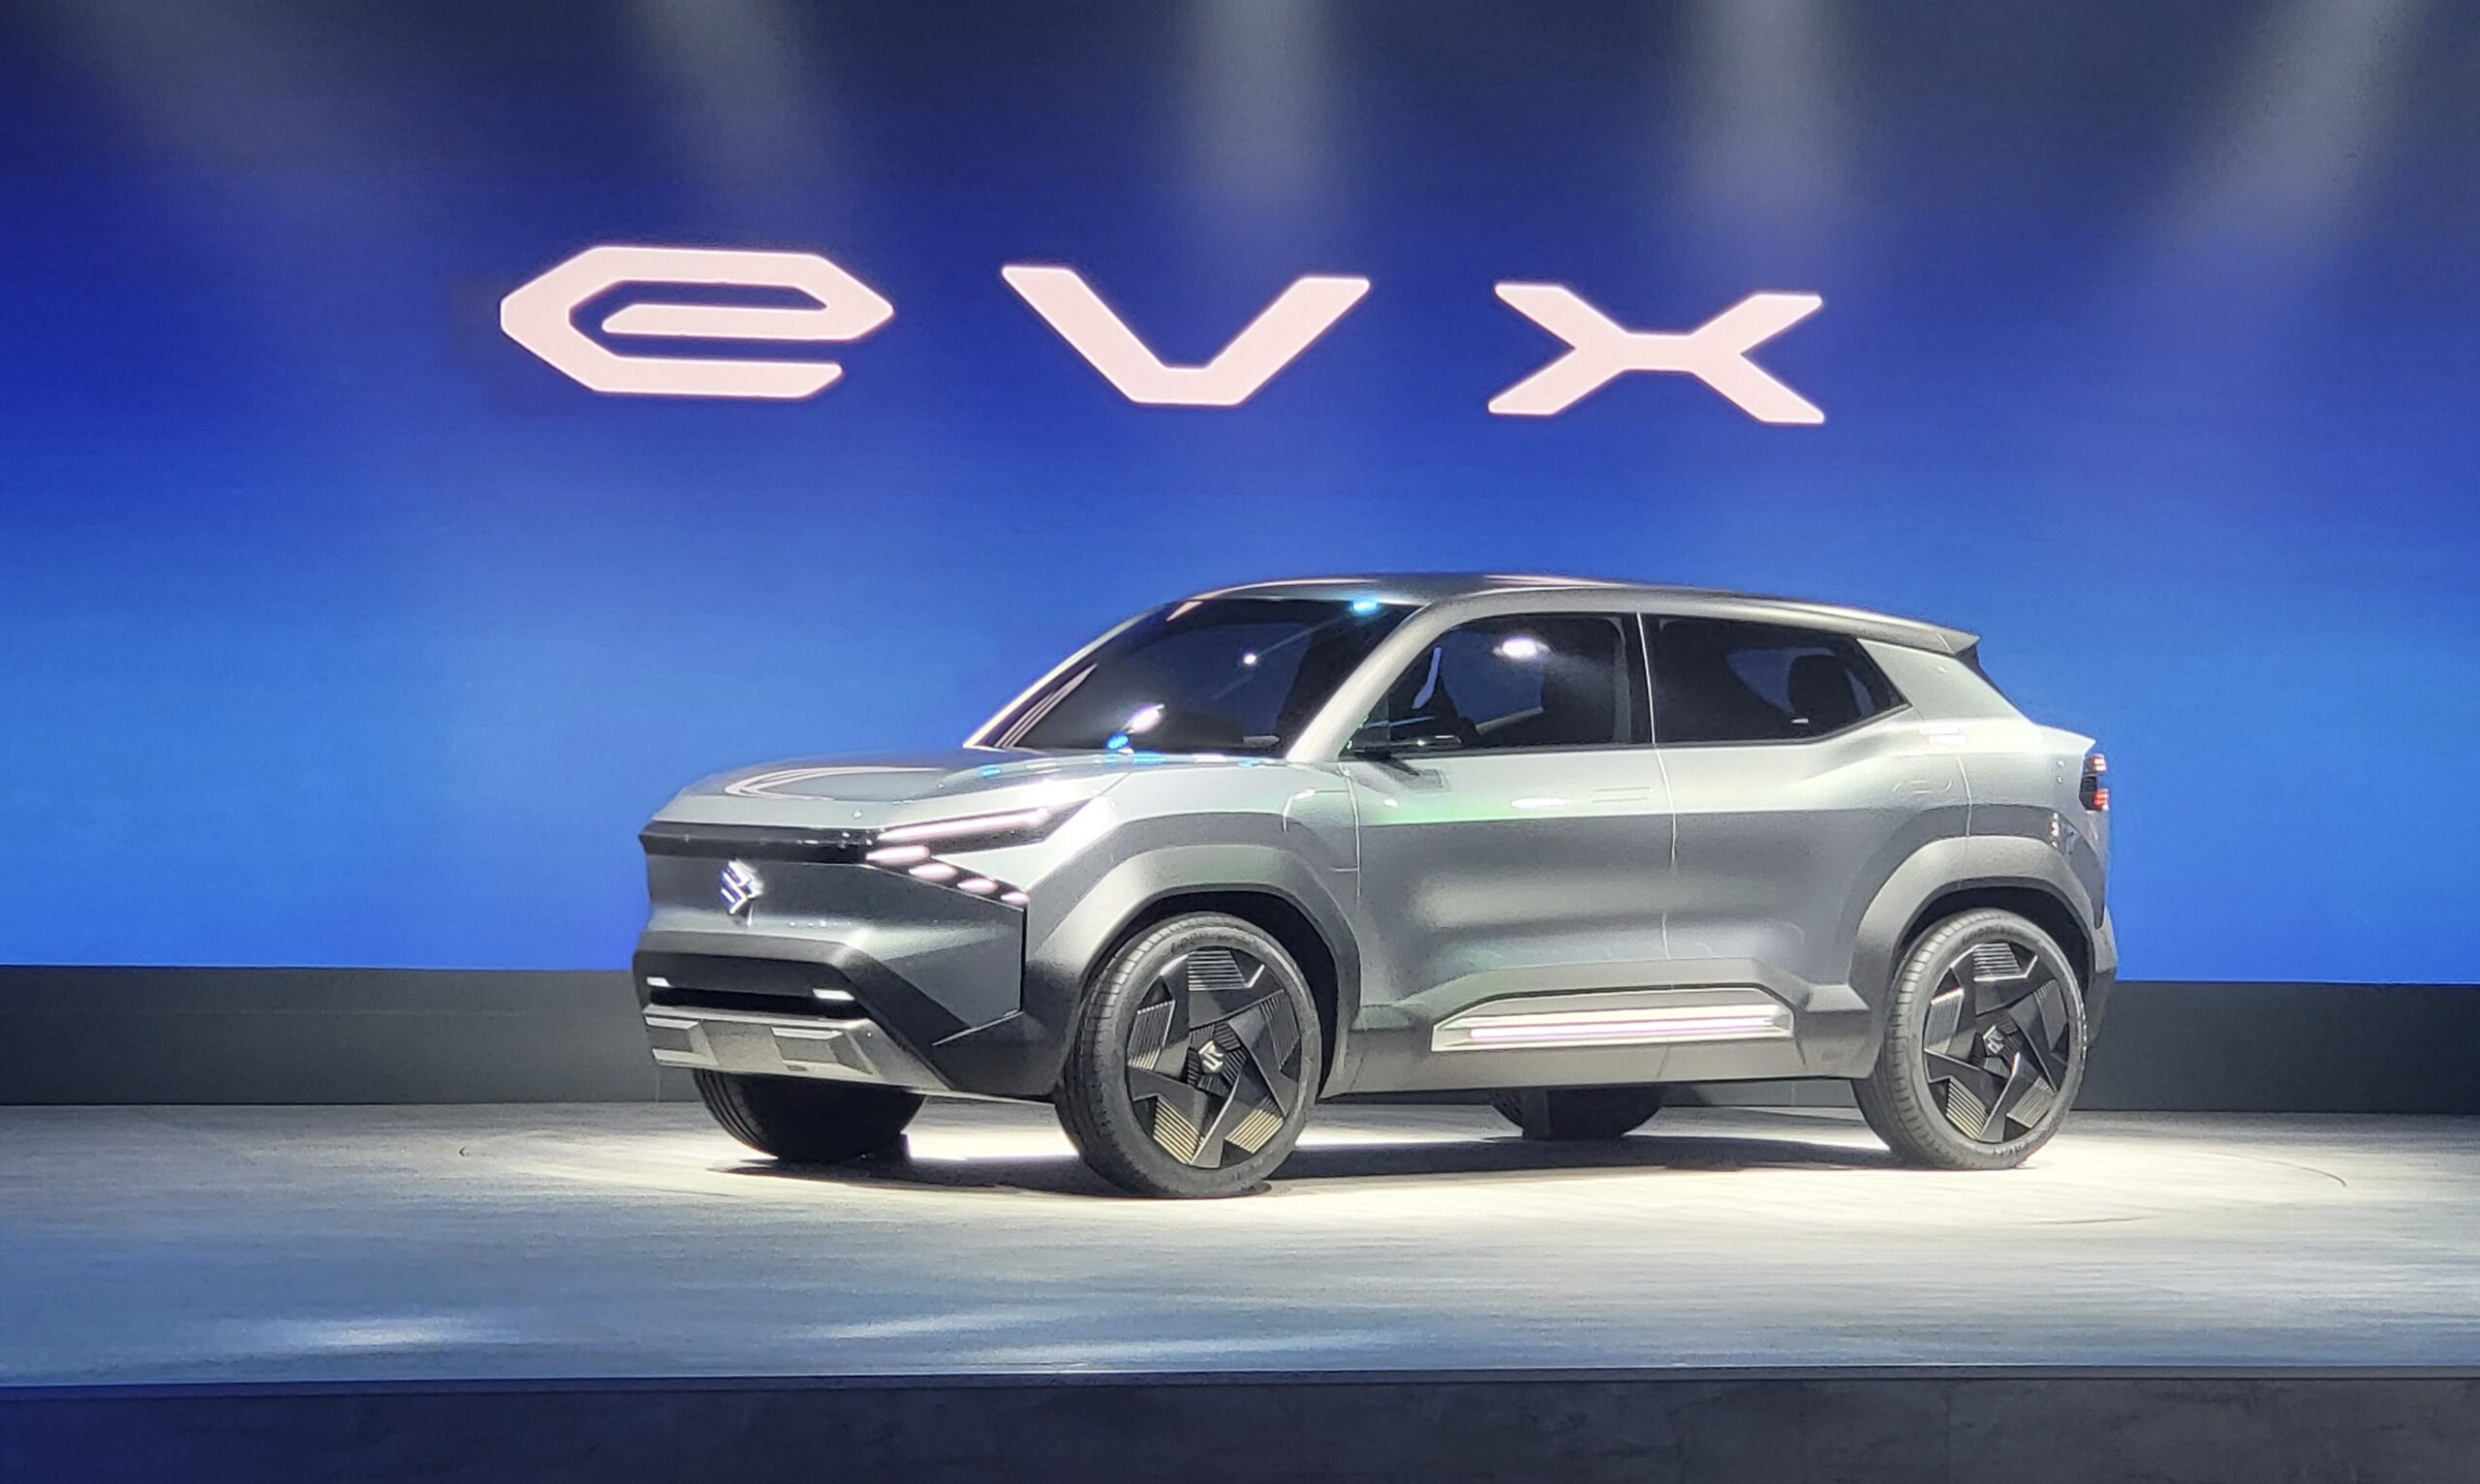 Maruti Suzuki eVX Launch Delayed To Next Year